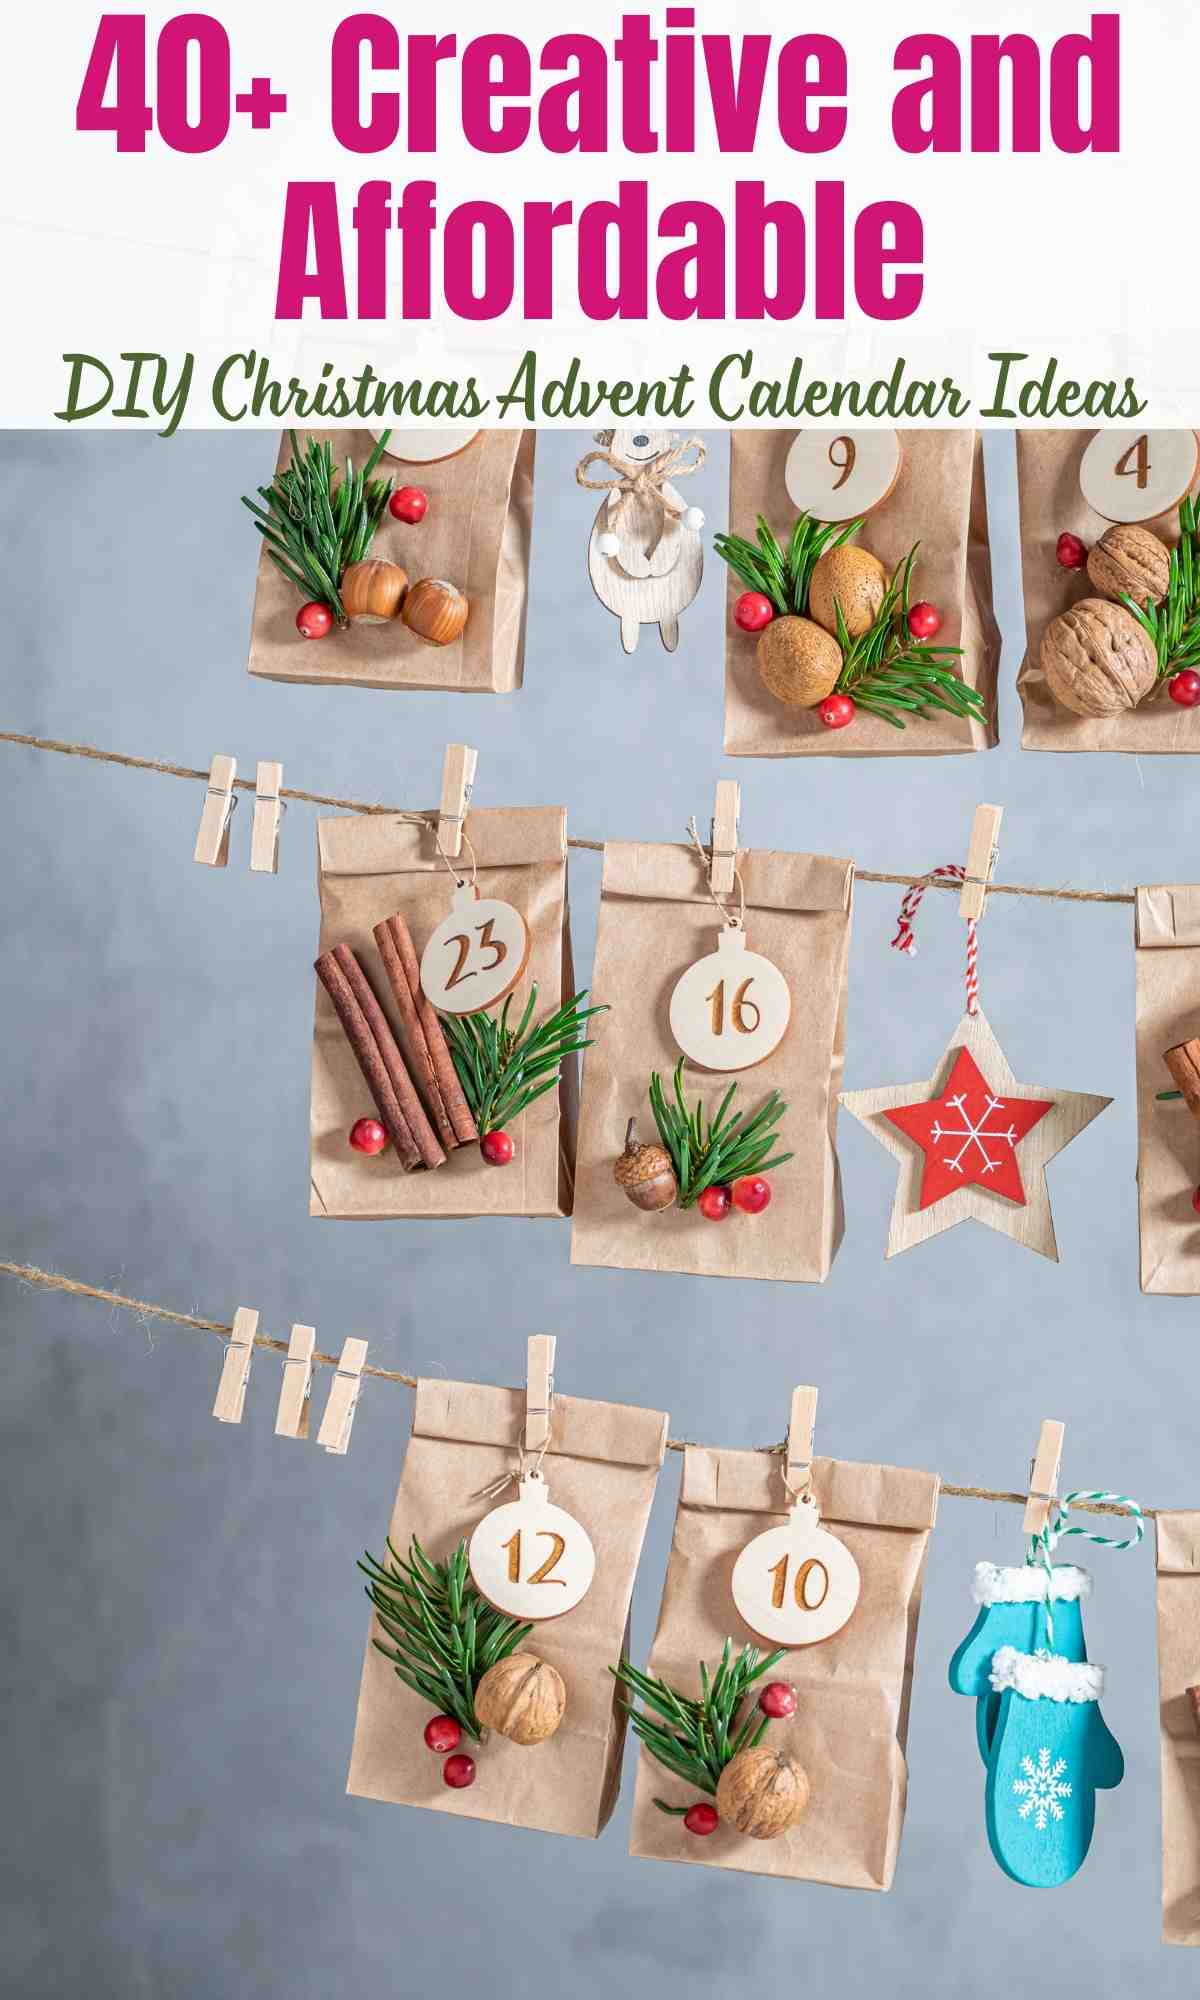 DIY Christmas Advent Calendar Ideas